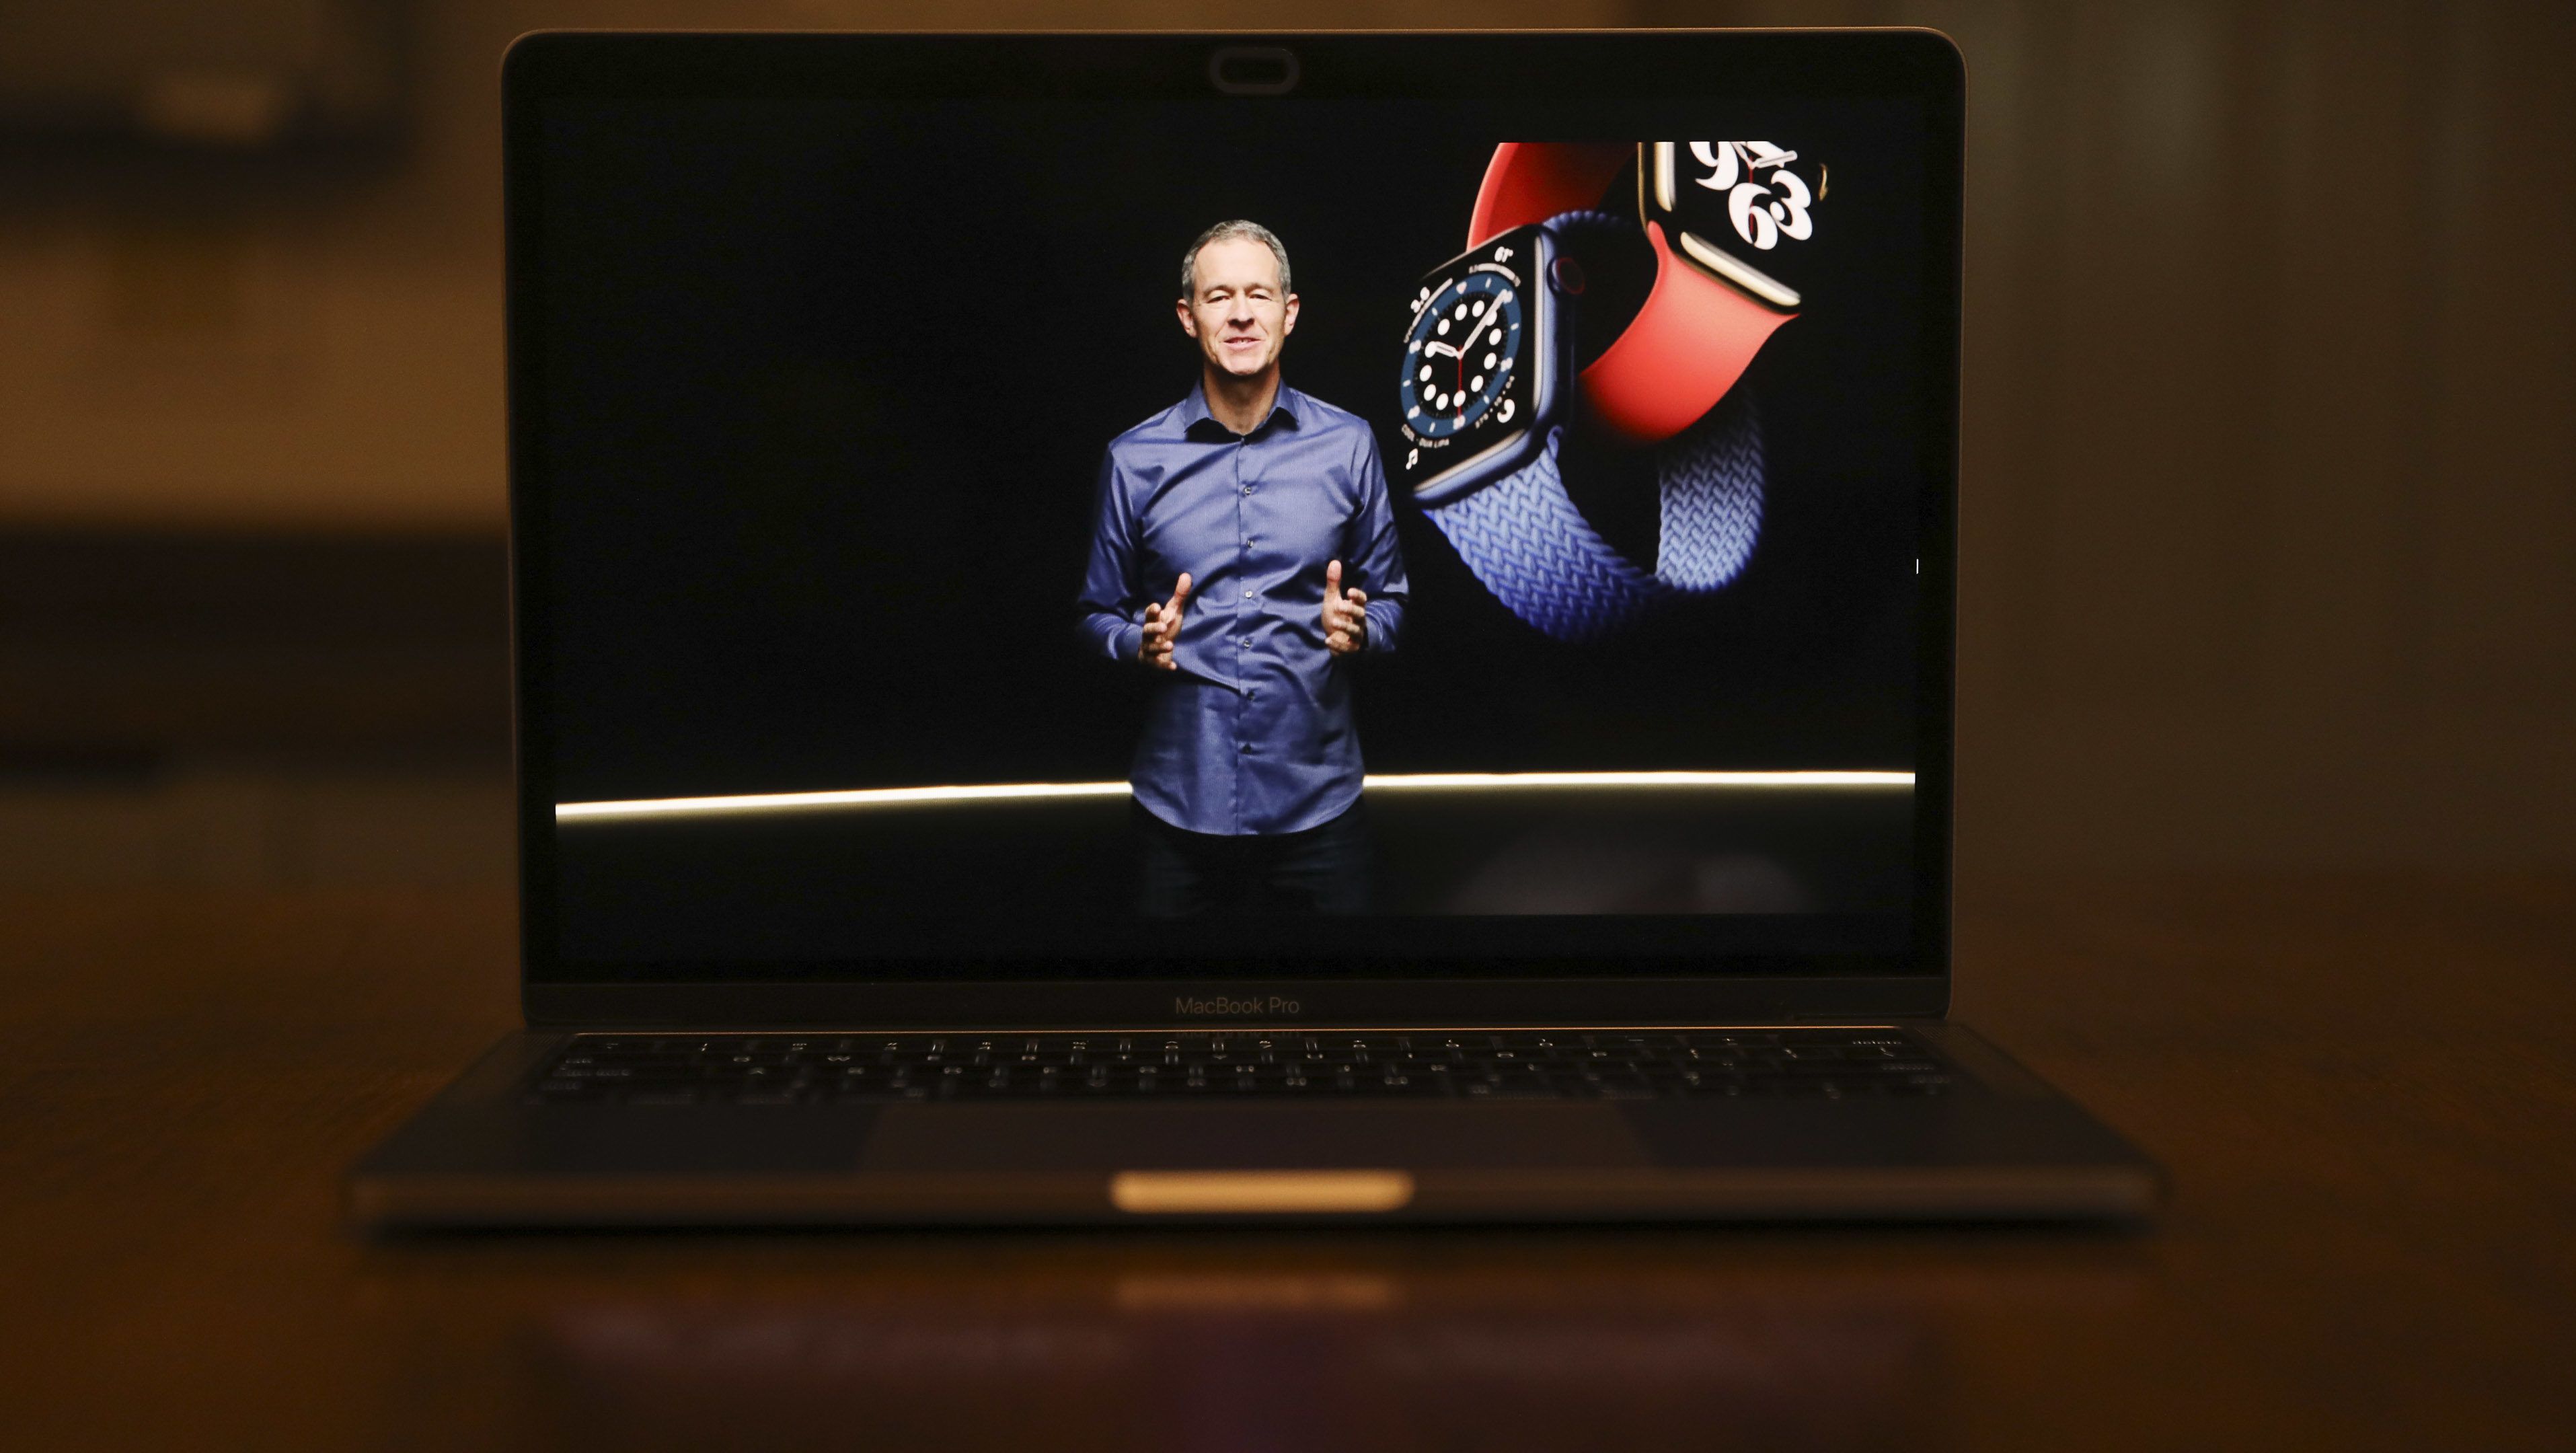 Az új Apple Watch 6 mellett egy olcsóbb okosórát is mutatott az Apple